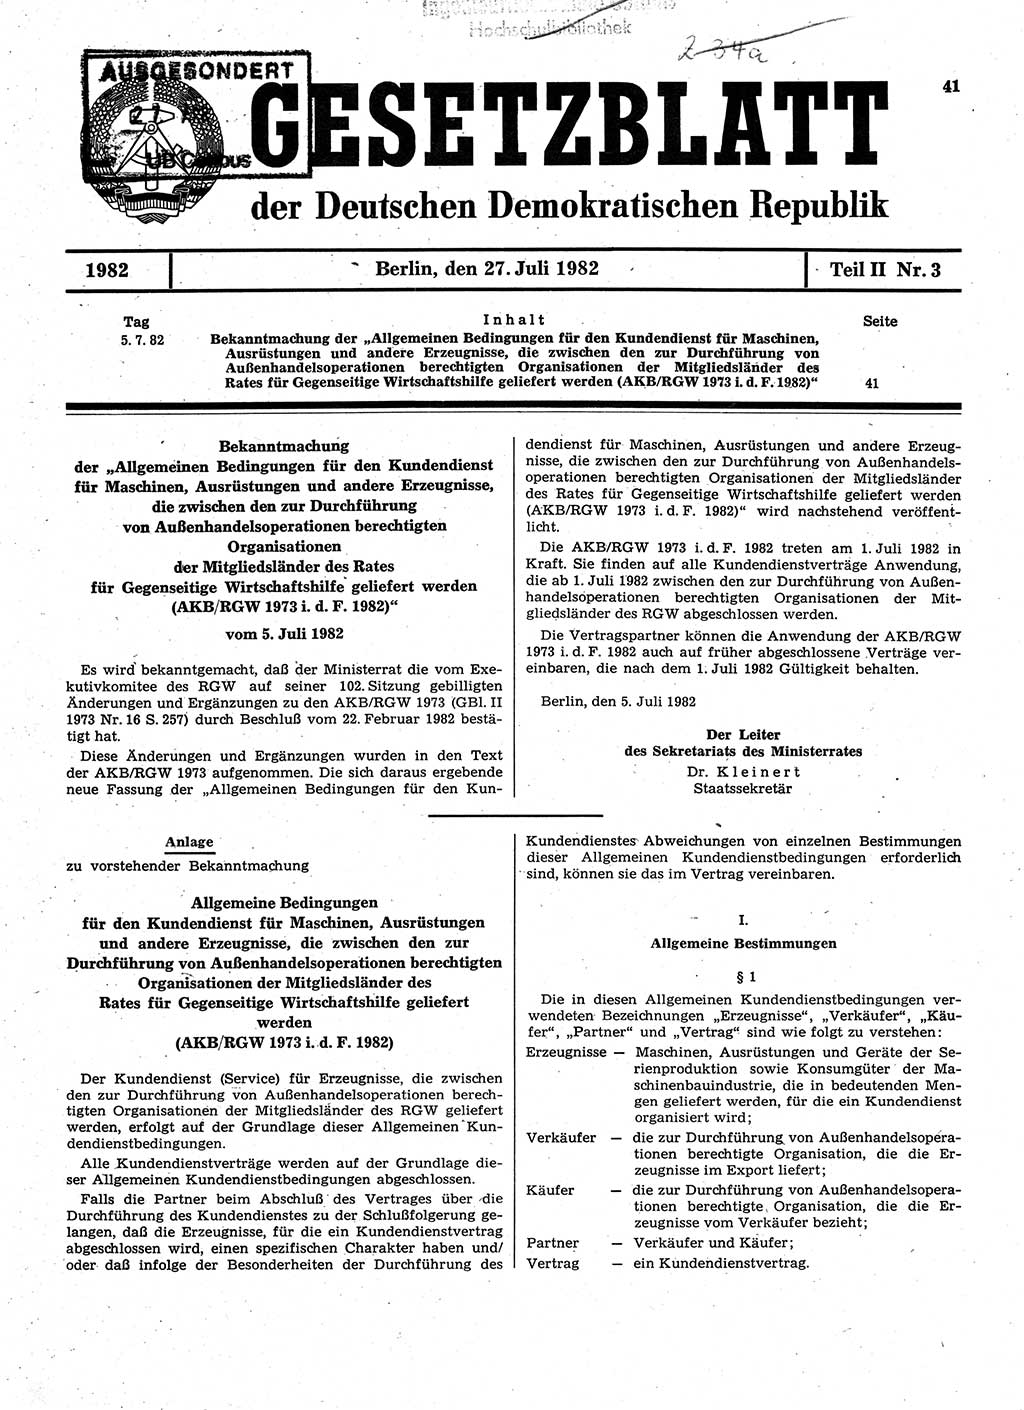 Gesetzblatt (GBl.) der Deutschen Demokratischen Republik (DDR) Teil ⅠⅠ 1982, Seite 41 (GBl. DDR ⅠⅠ 1982, S. 41)